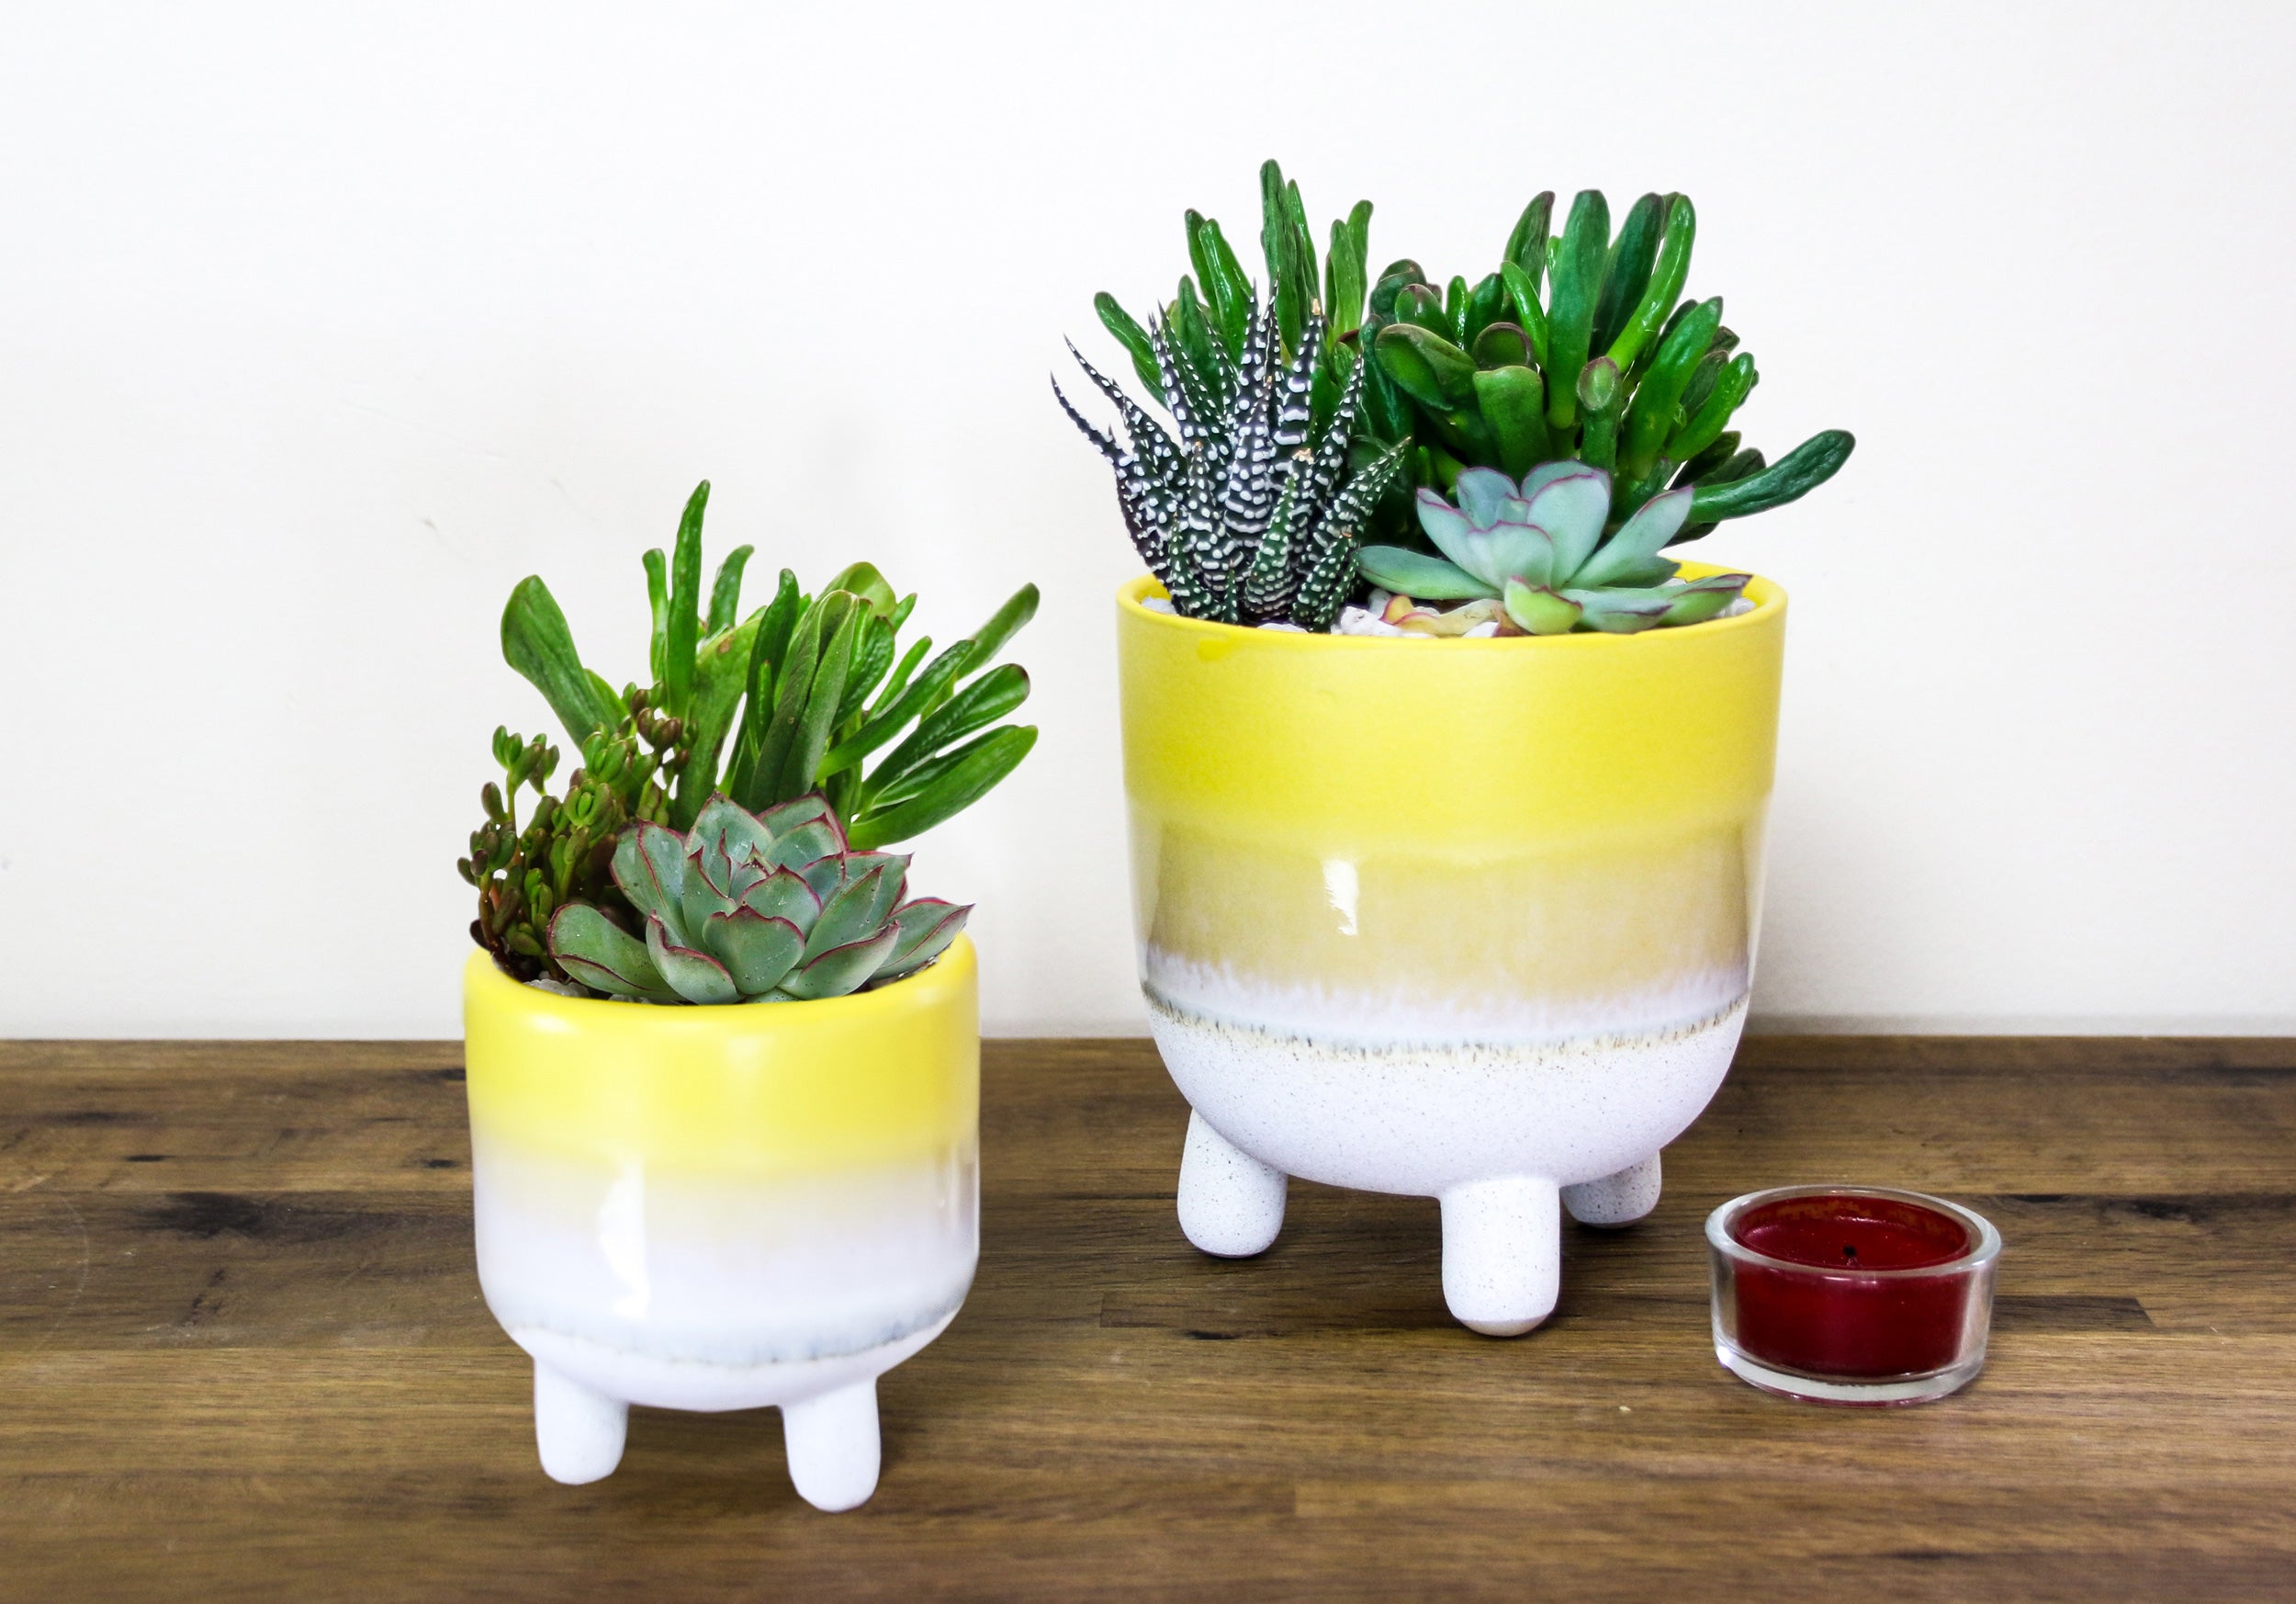 Order succulent plants online with pots